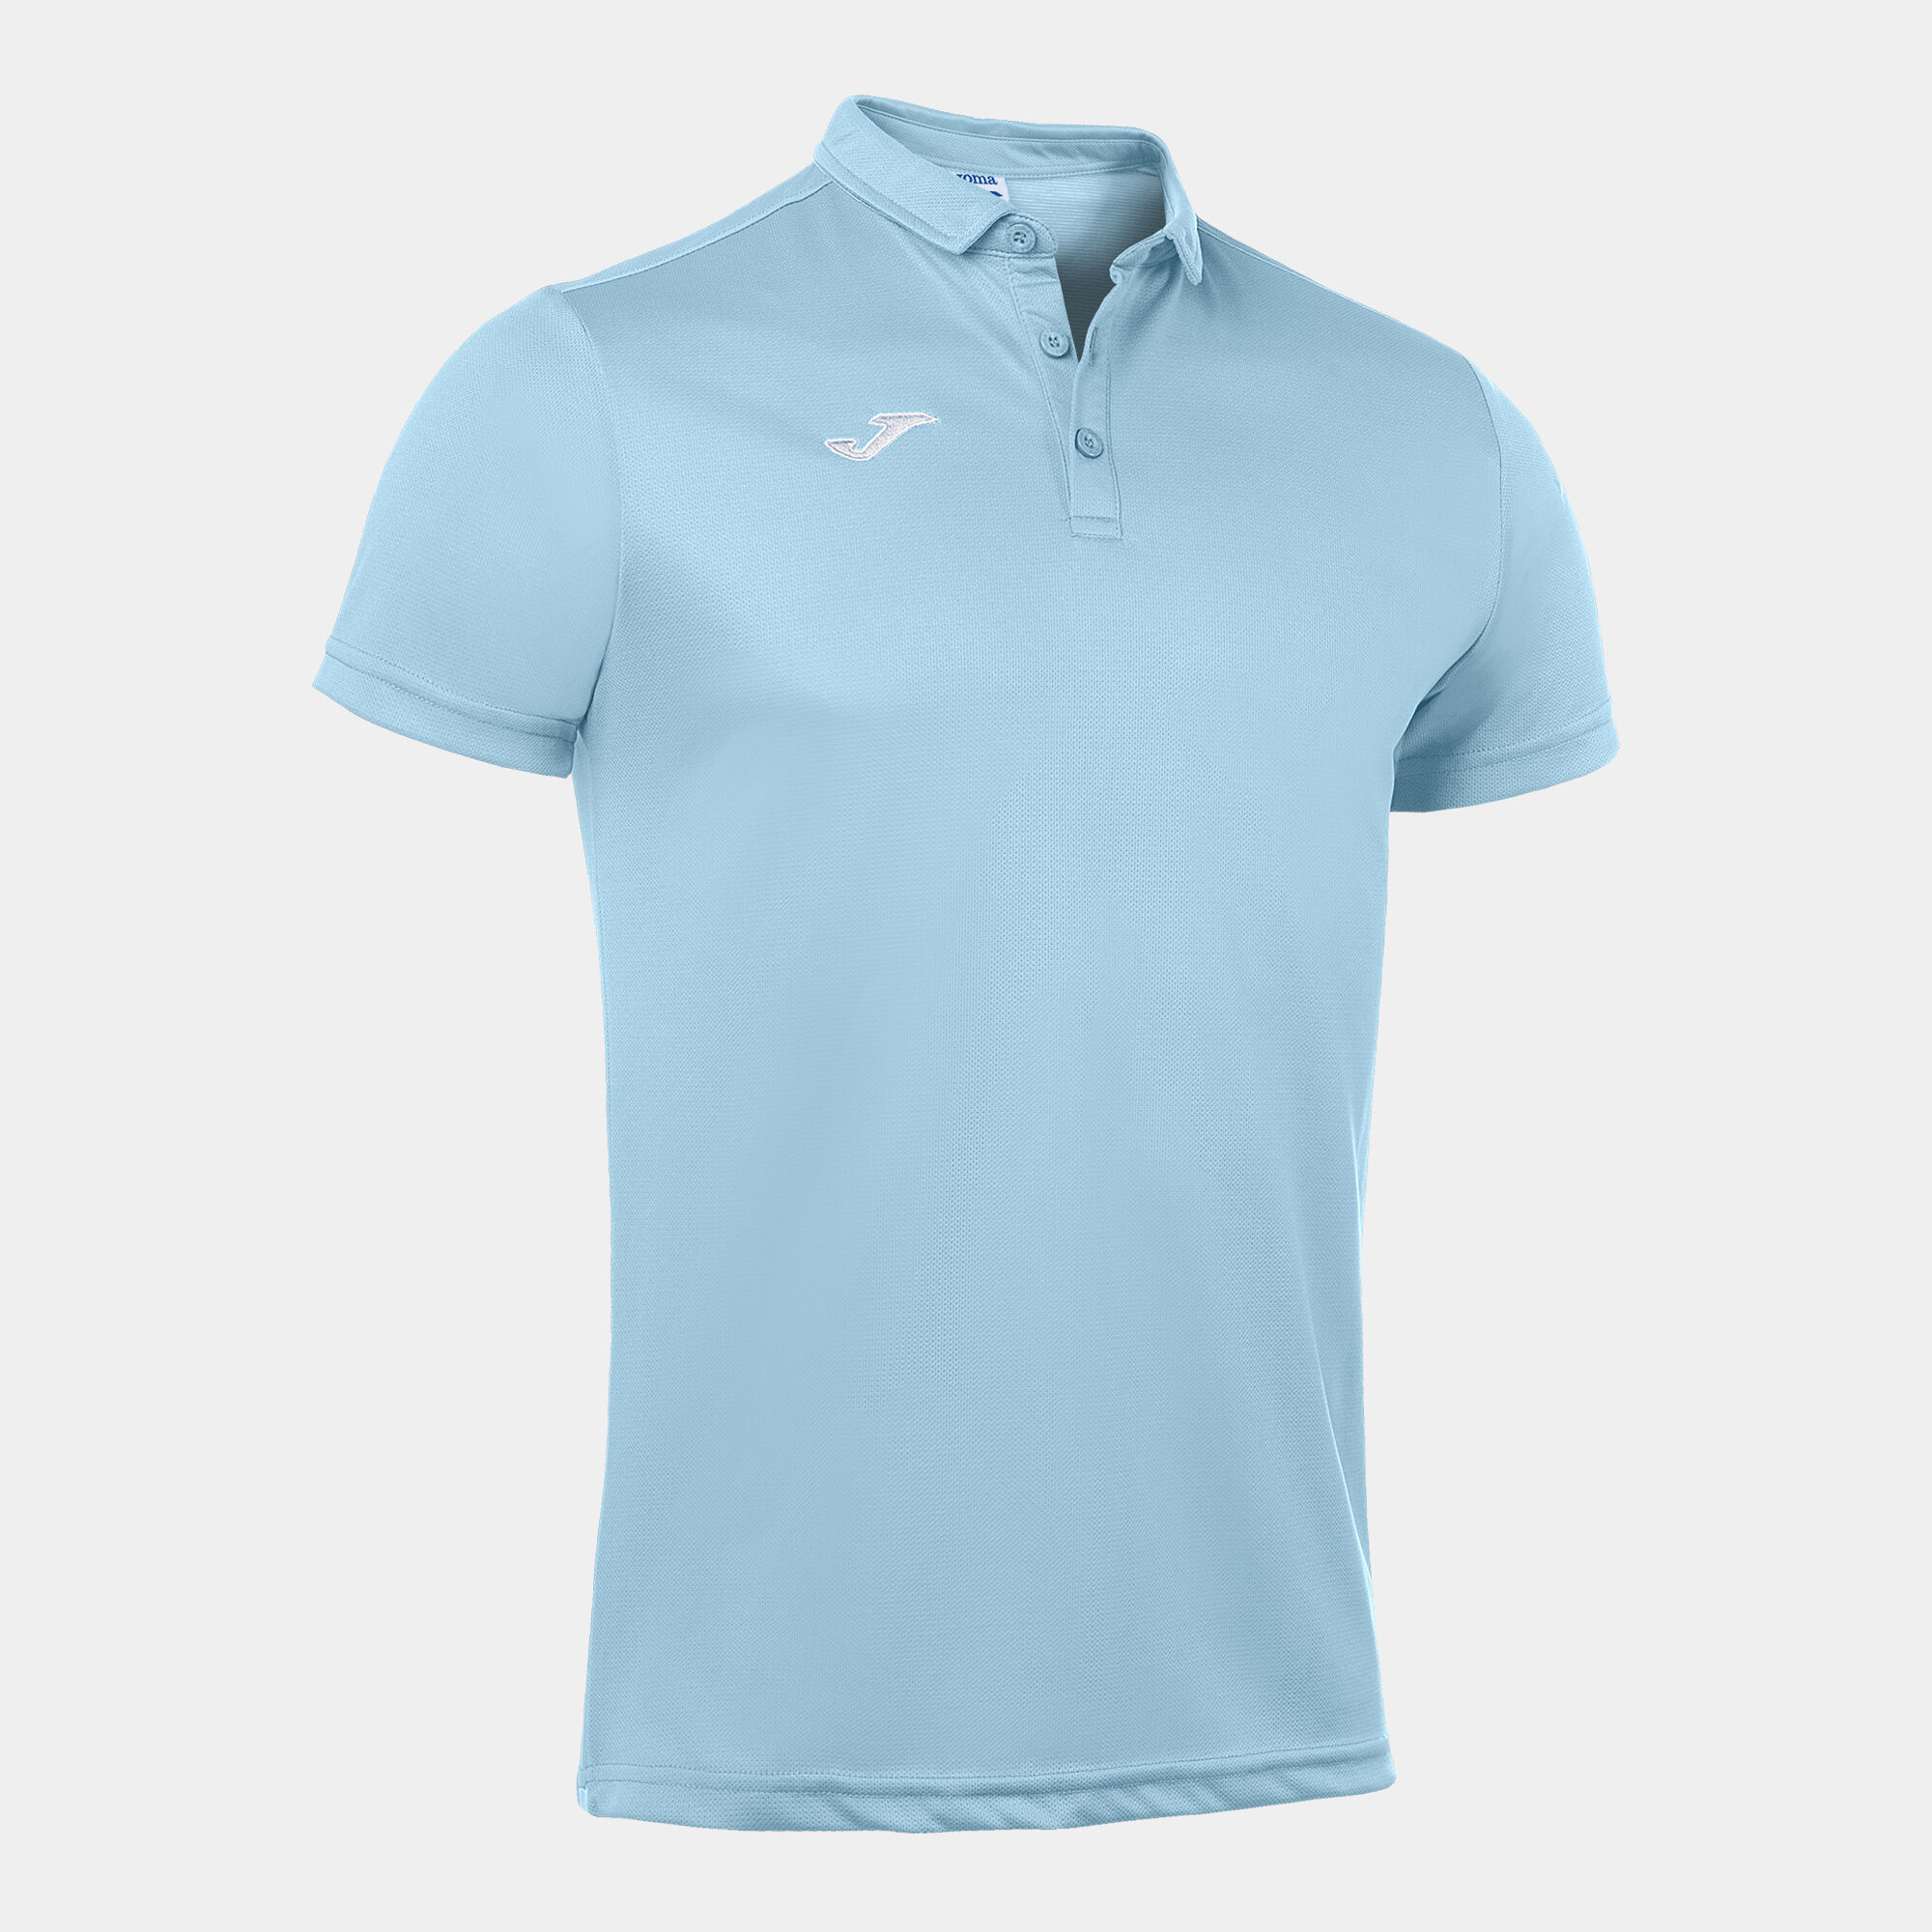 Polo shirt short-sleeve man Hobby sky blue